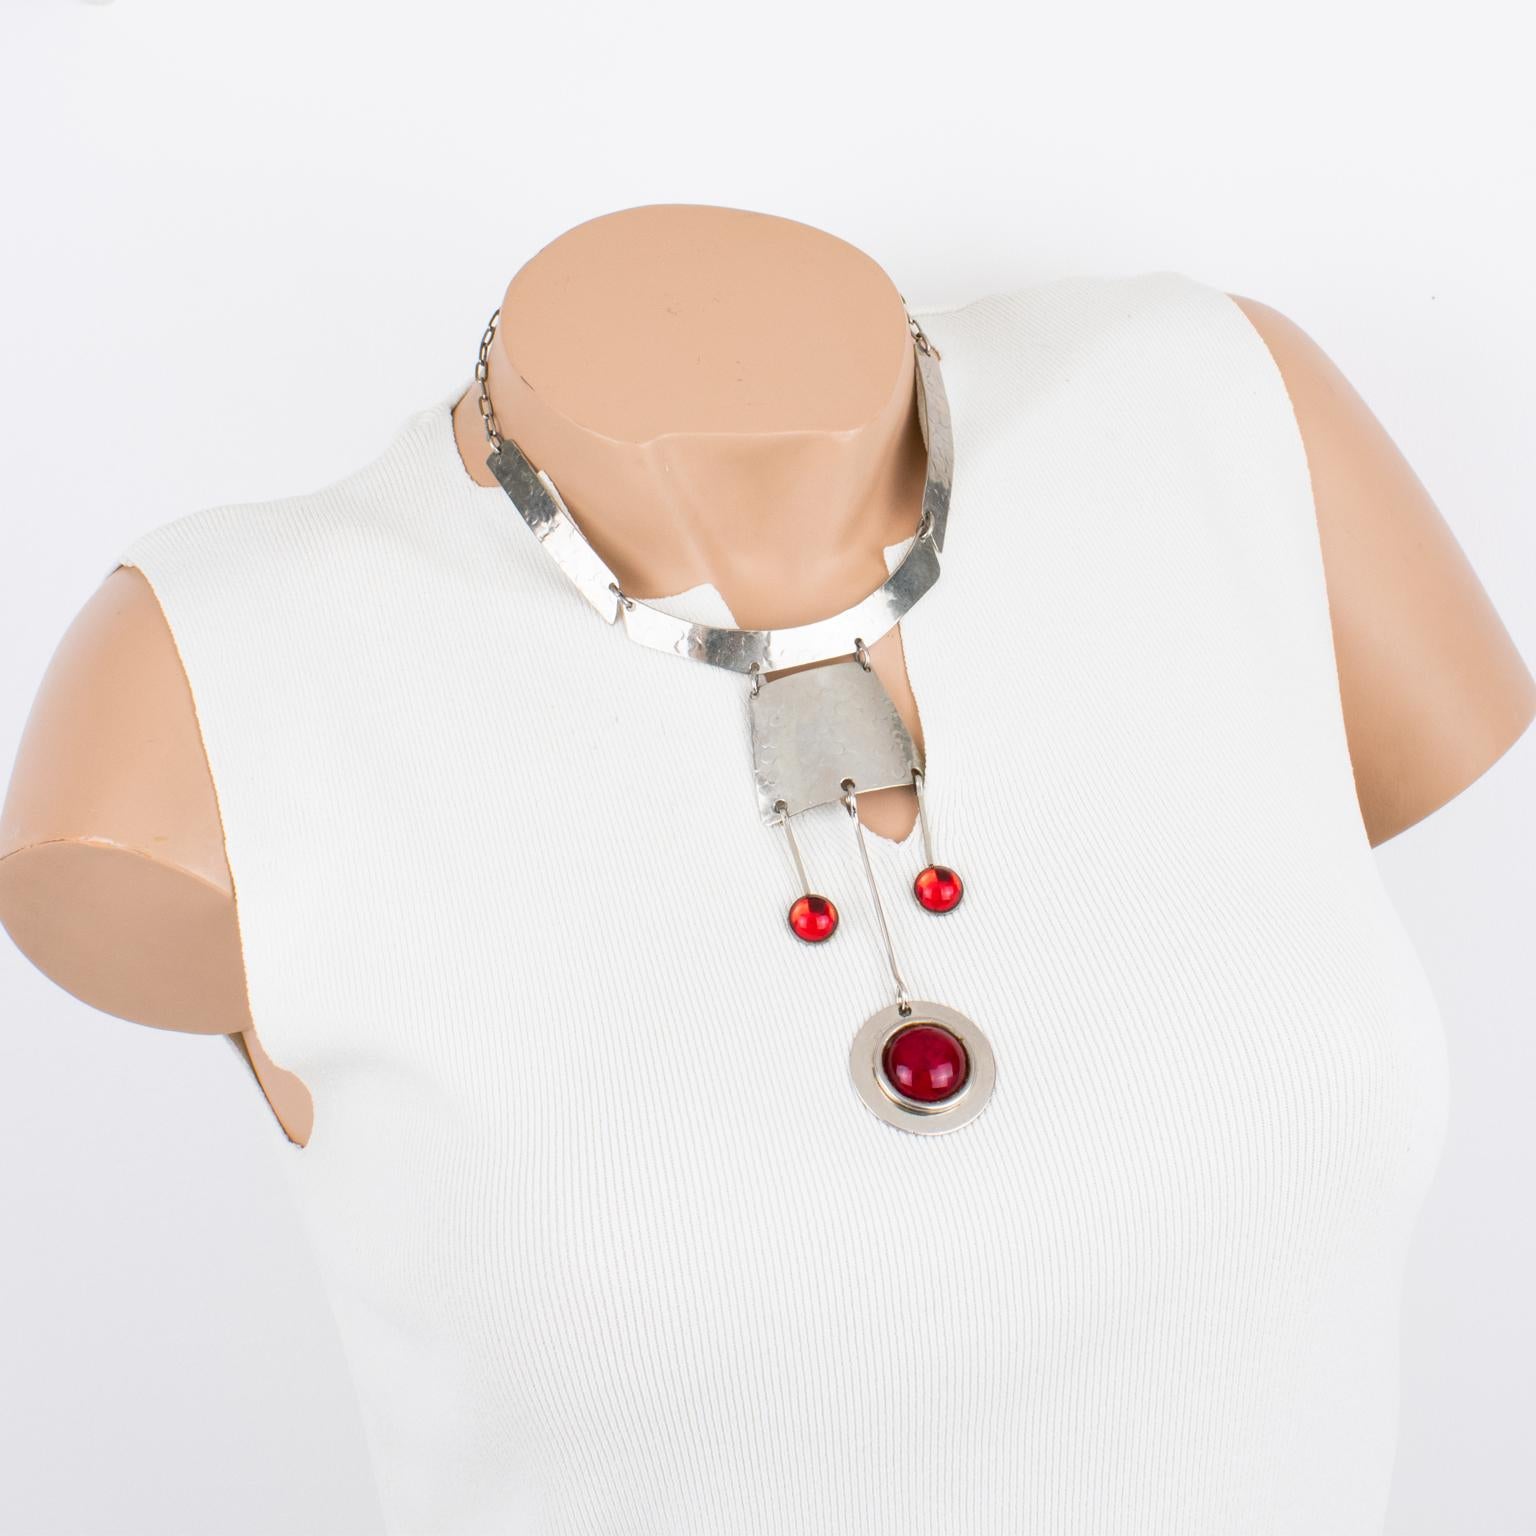 Ce superbe collier moderniste de la NO AGE a été fabriqué en France dans les années 1970. Le collier comporte des éléments géométriques martelés en acier inoxydable, ornés de breloques pendantes. Les pendentifs à breloques décoratives sont ornés de